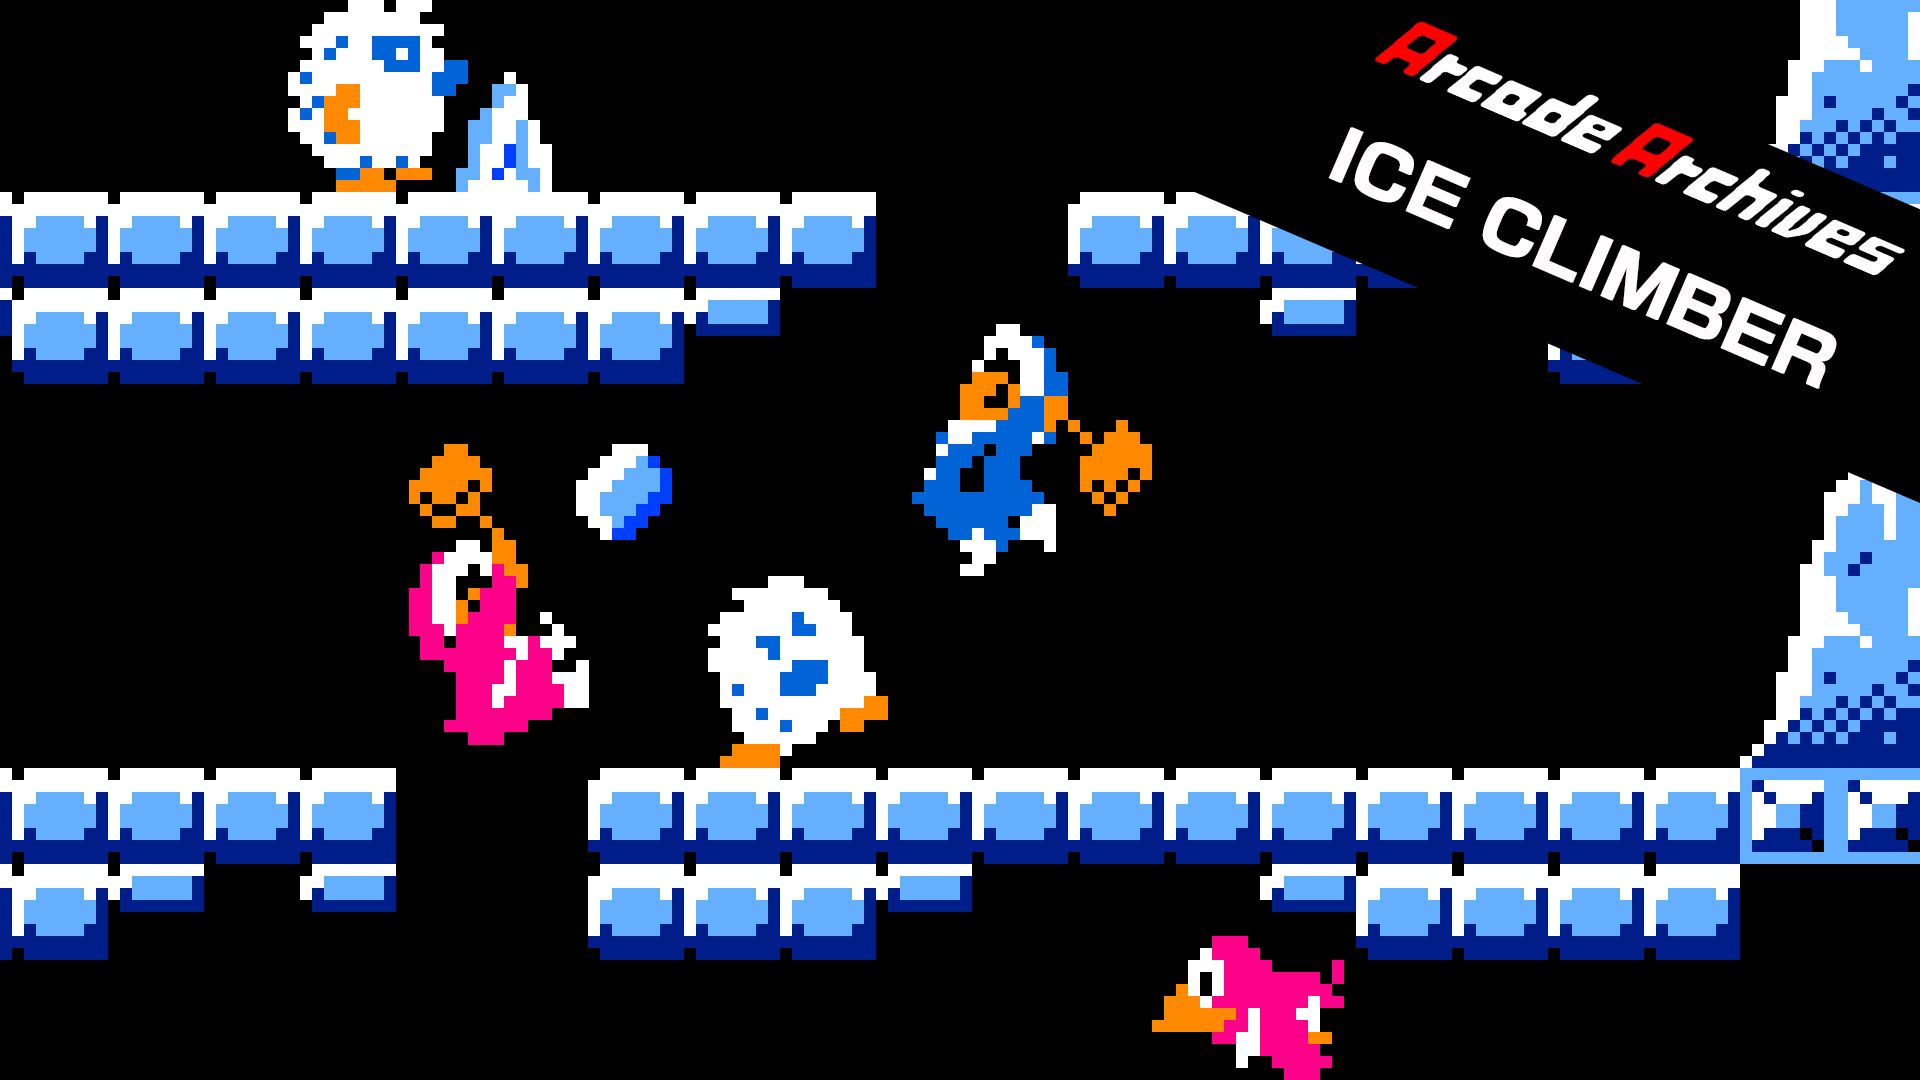 Original NES Ice Climber Arcade Classics